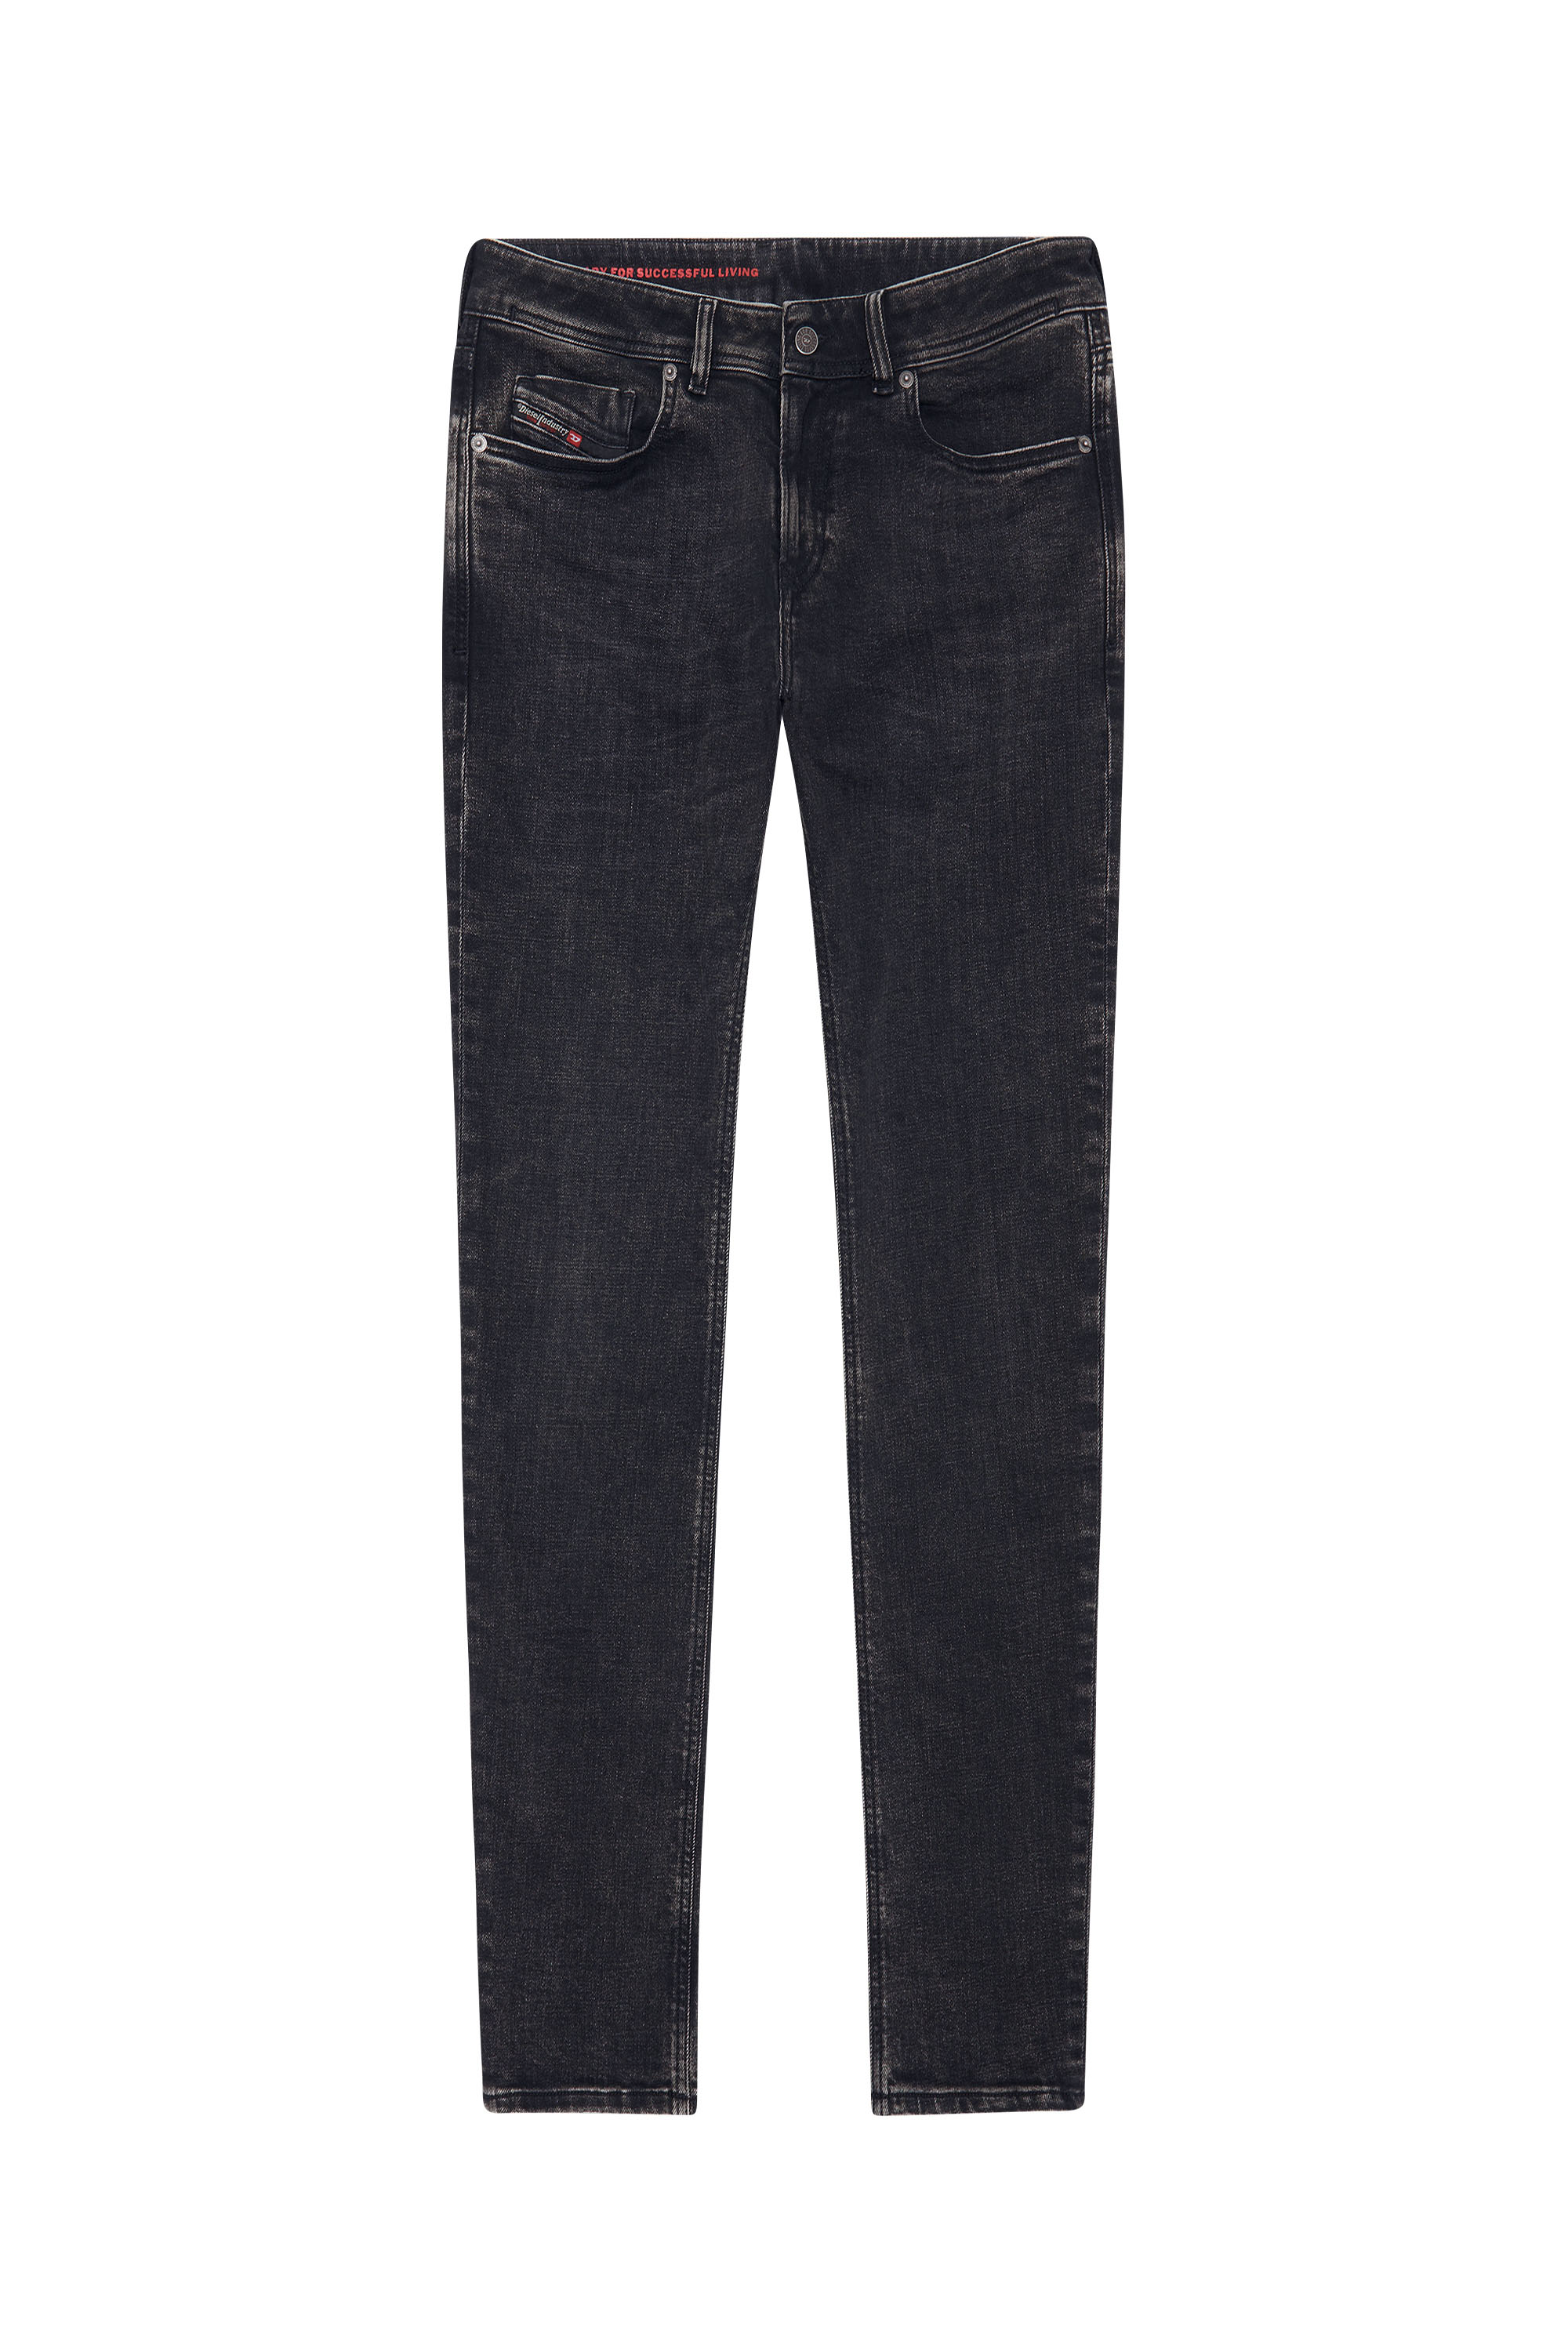 Skinny Jeans 1979 Sleenker 09C23, Black/Dark grey - Jeans